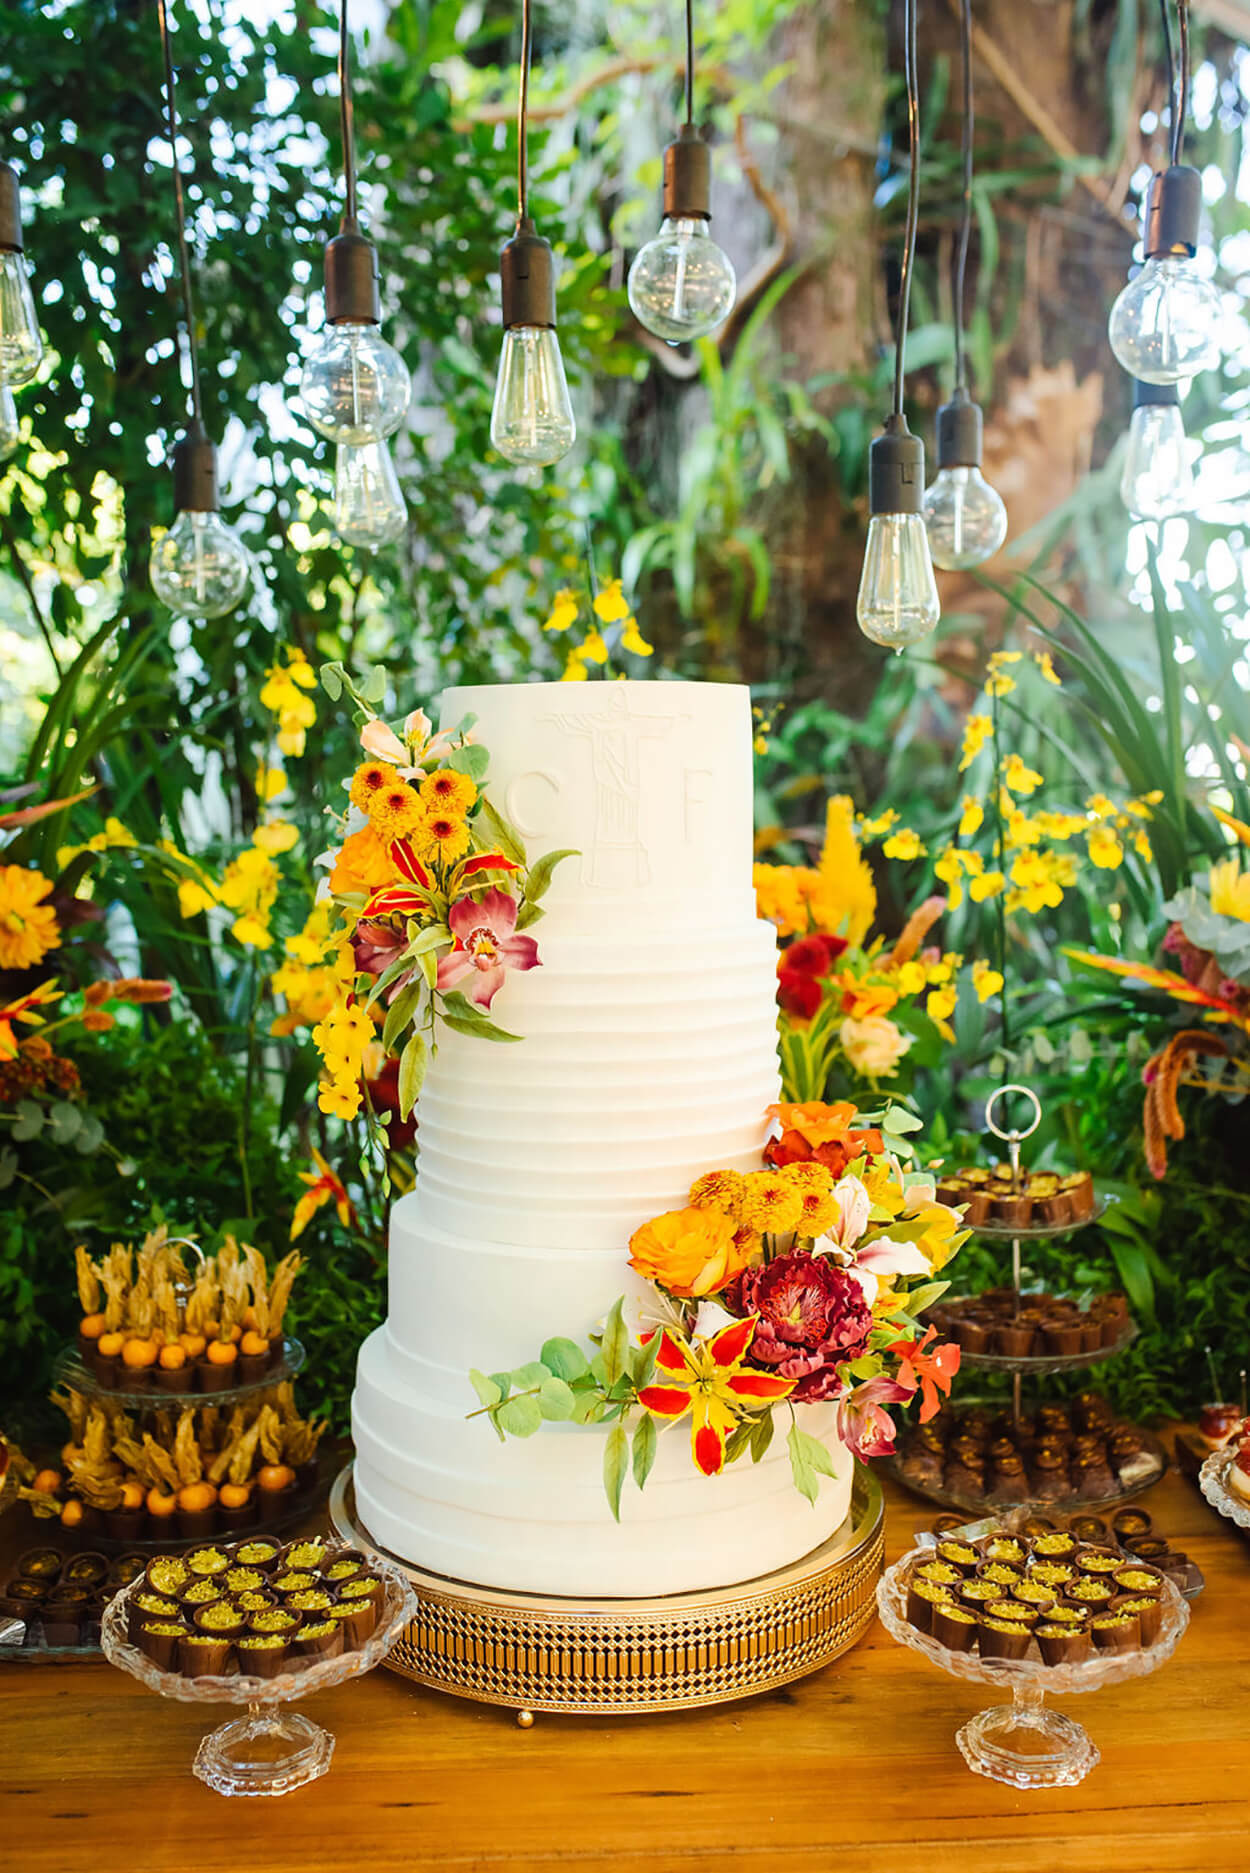 mesa de madeira com bolo de casamento branco com tres andares e arranjos com flores amarelas e vermelhas